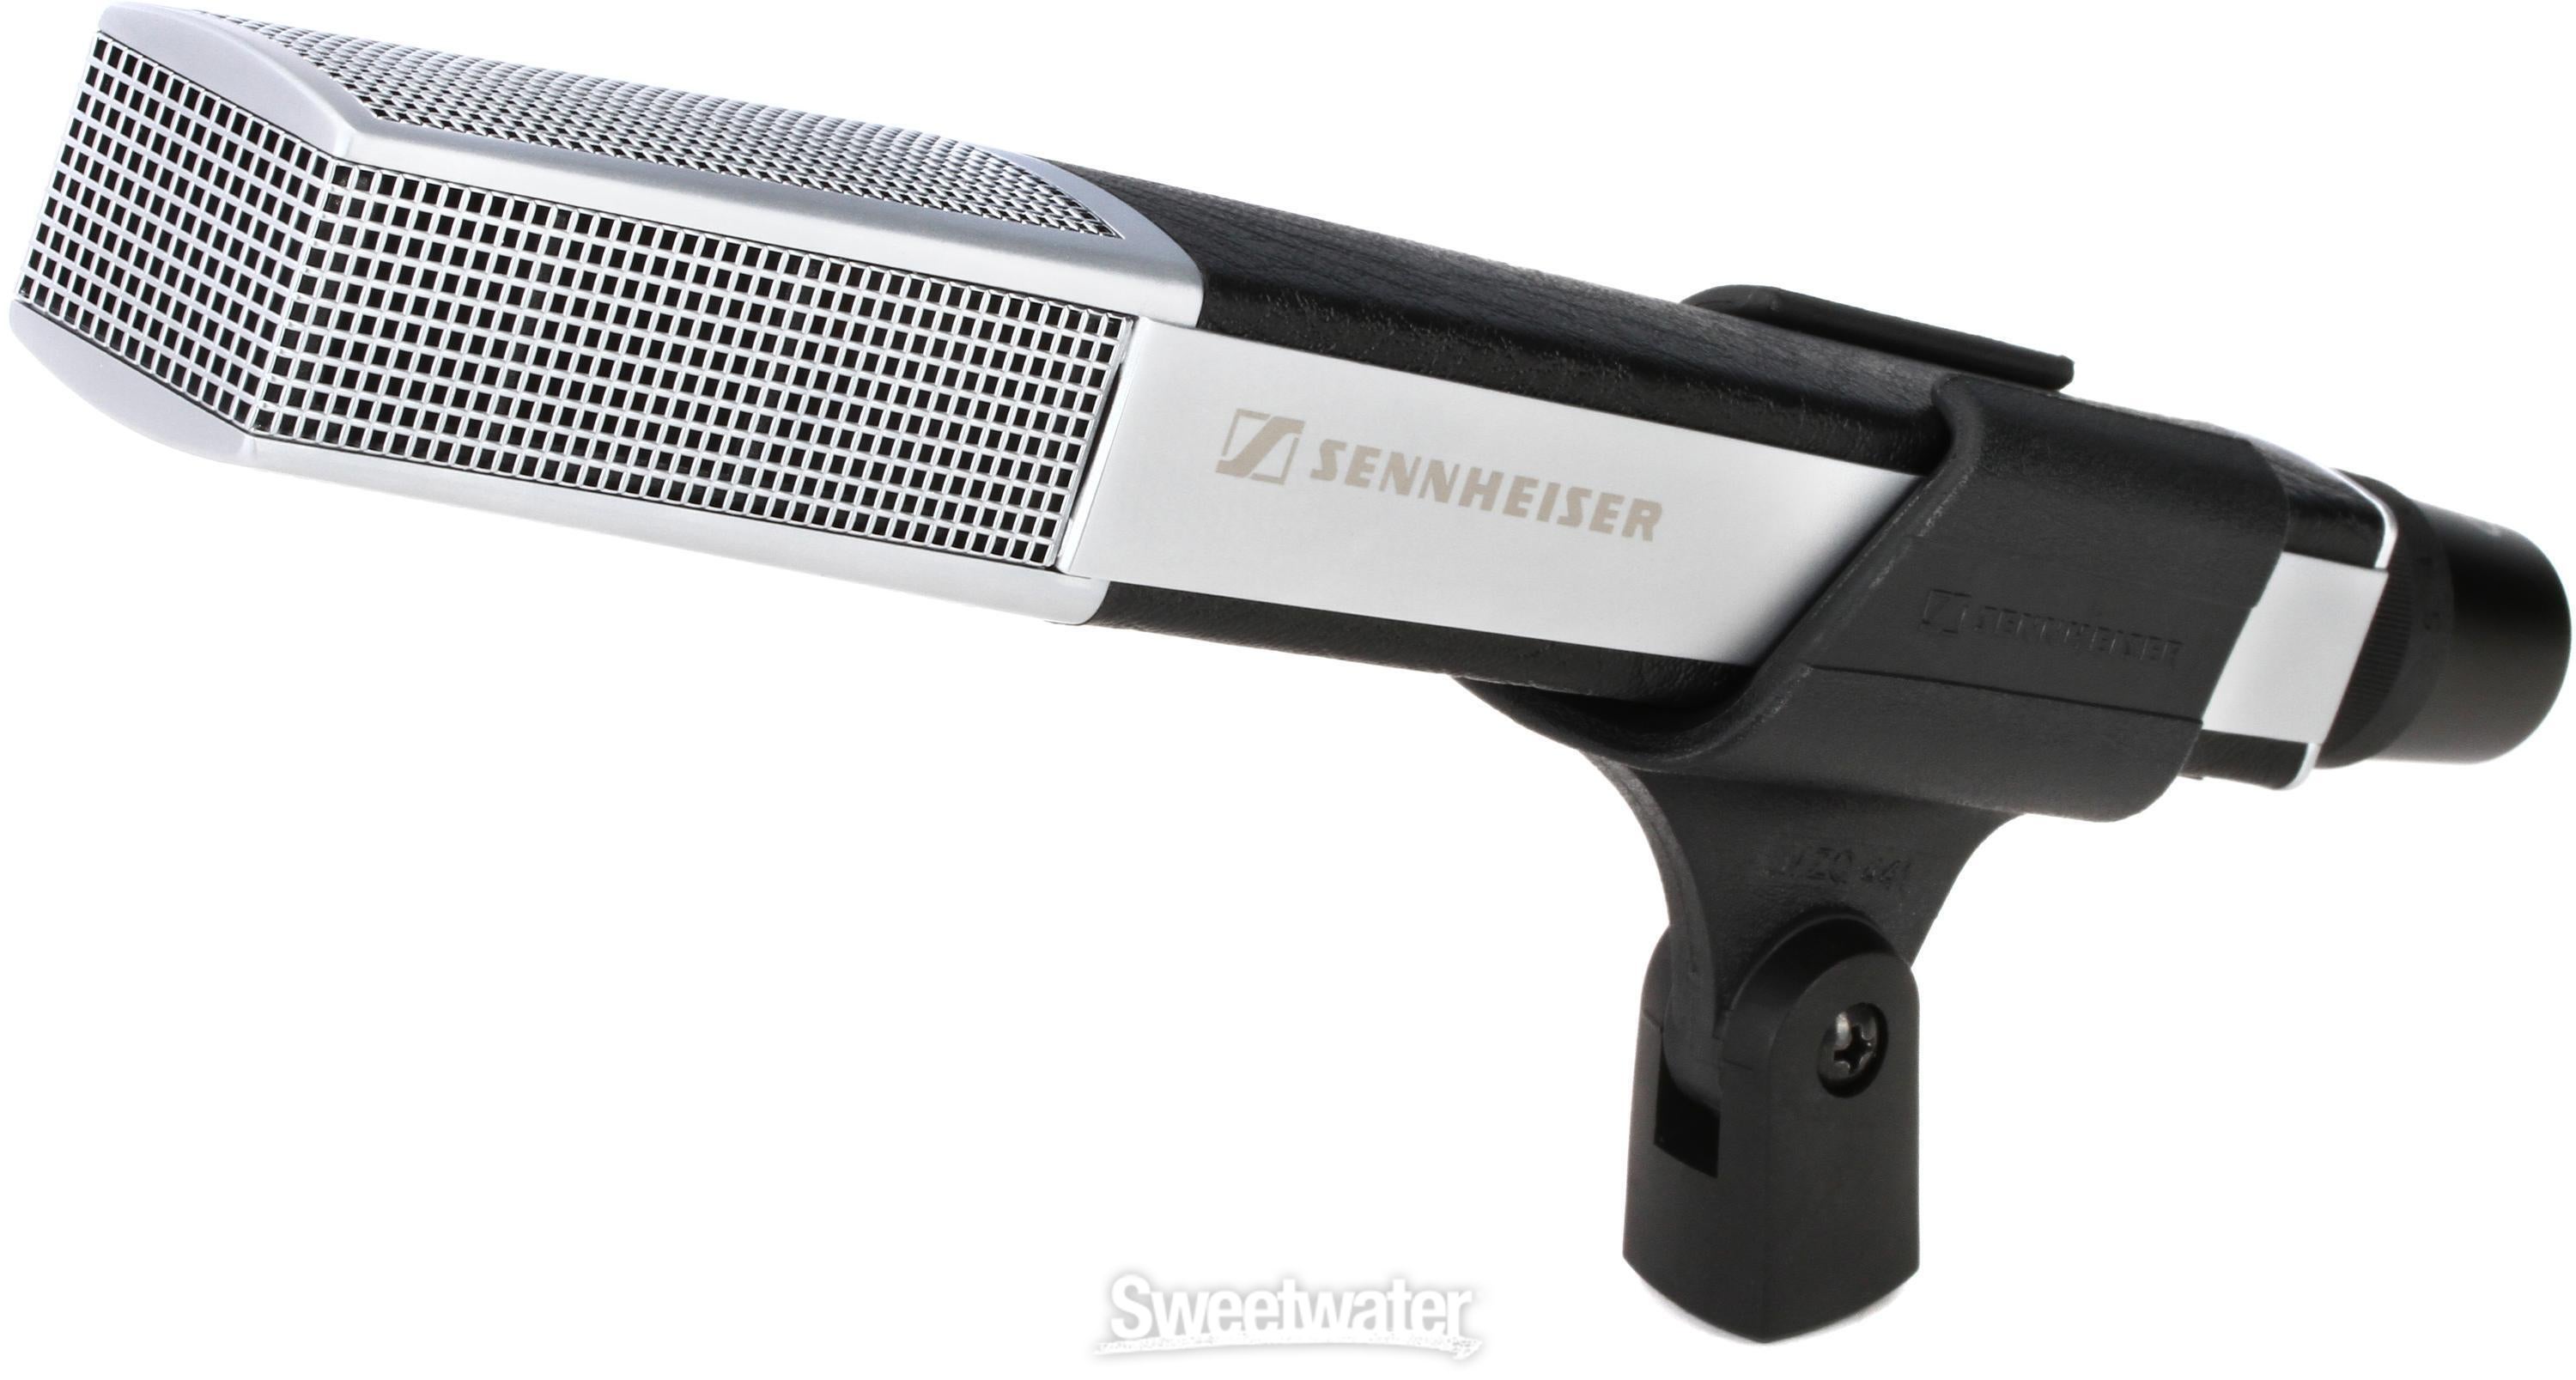 Sennheiser MD 441-U Dynamic Supercardioid Microphone